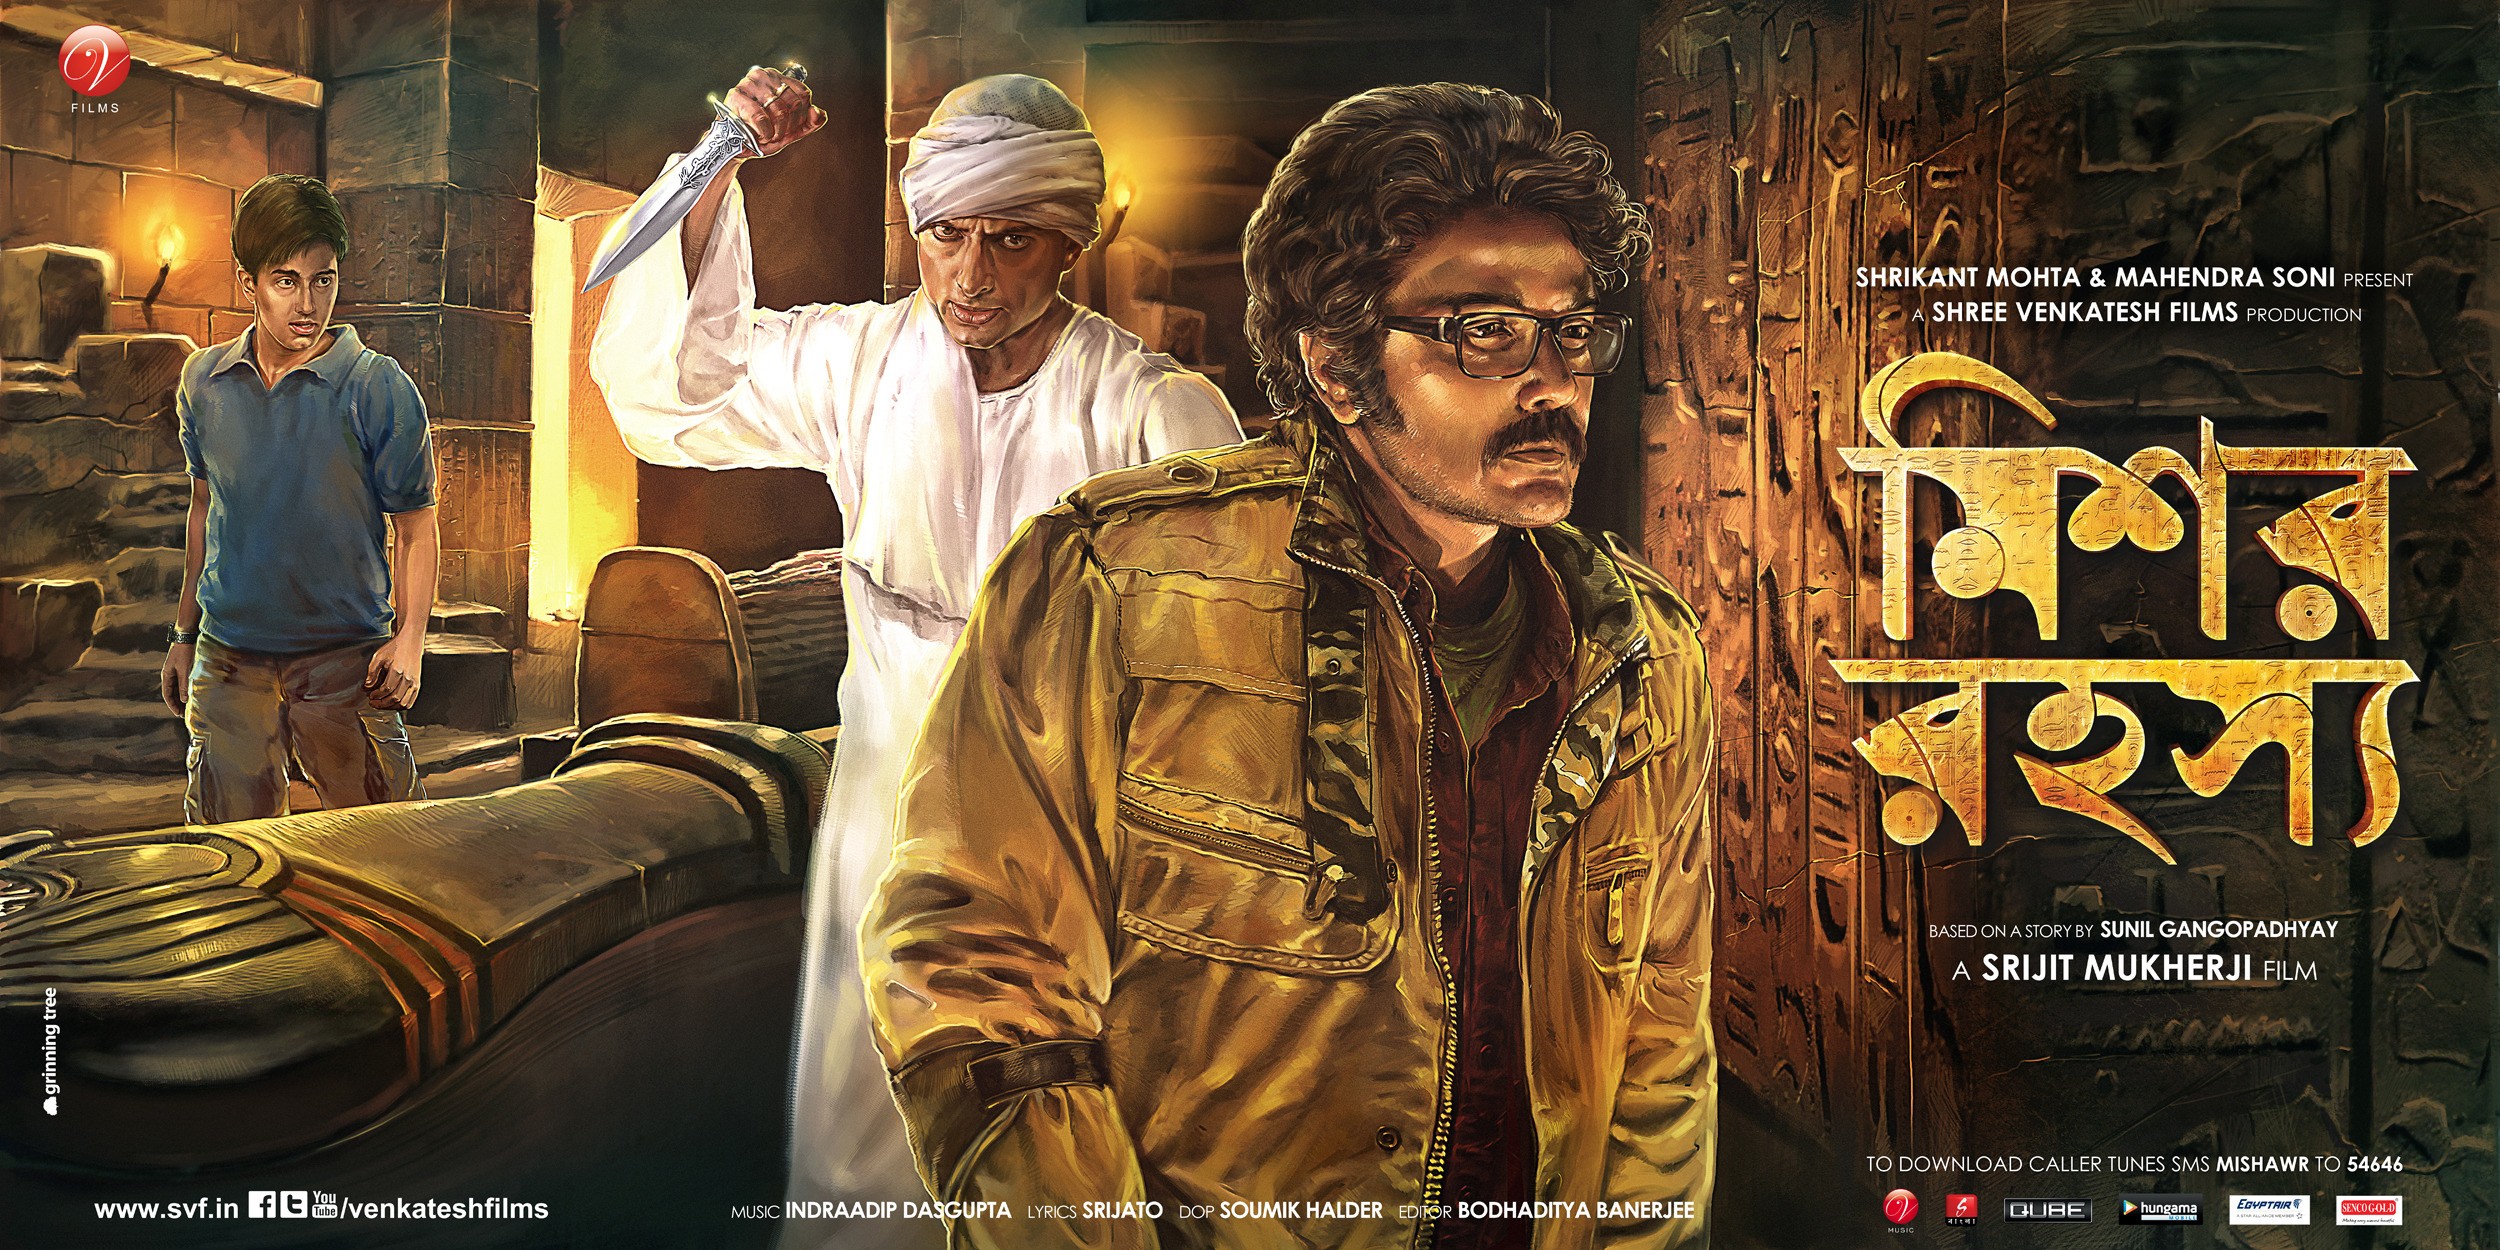 Mega Sized Movie Poster Image for Mishawr Rawhoshyo (#4 of 6)